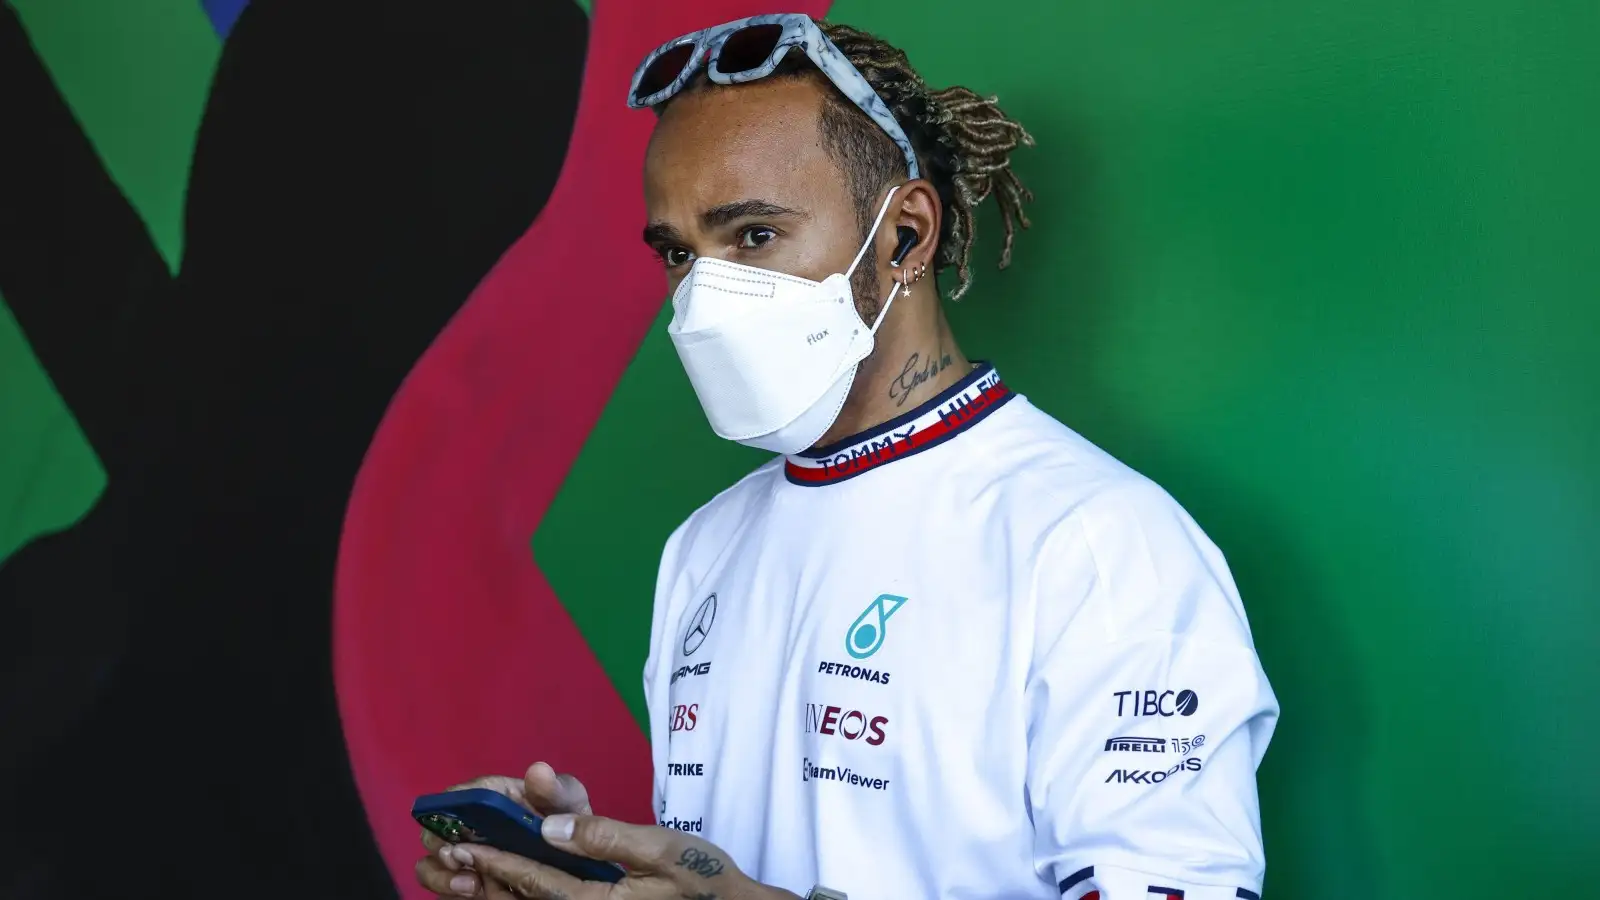 Lewis Hamilton on his phone. Melbourne, April 2022.